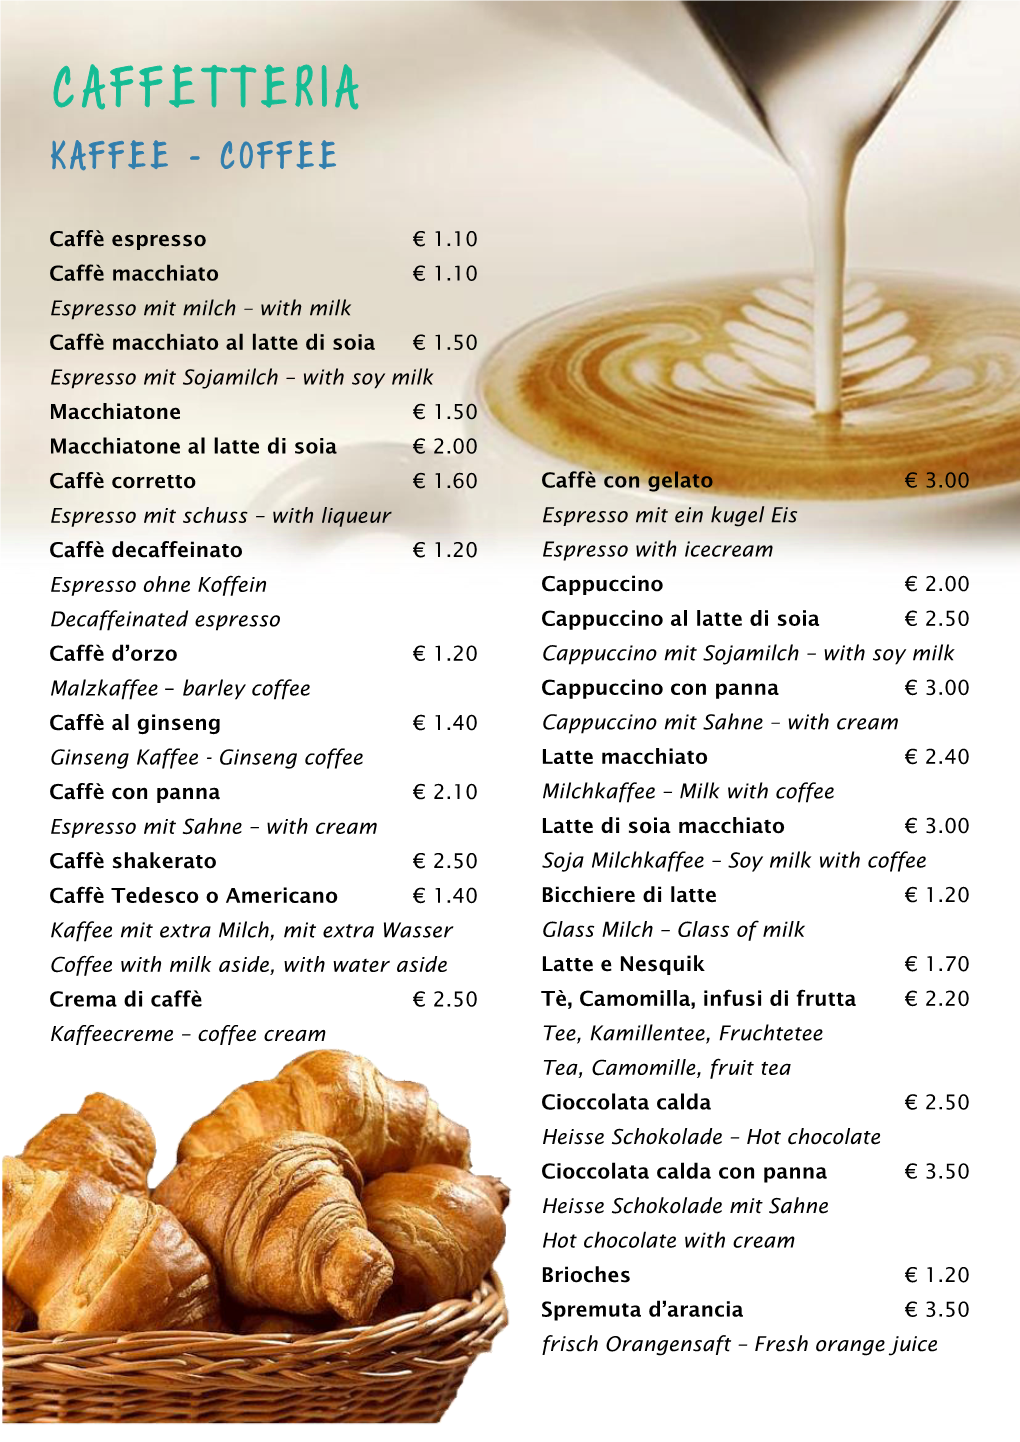 Caffetteria Kaffee - Coffee